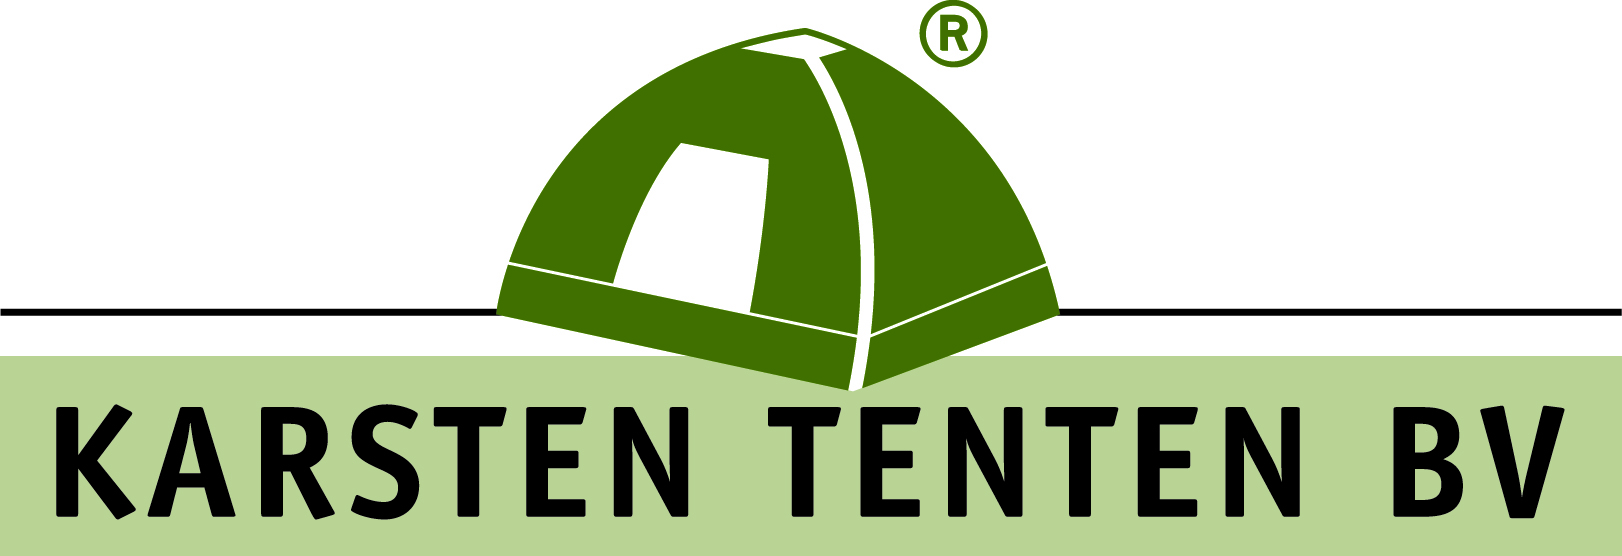 Karsten Tents